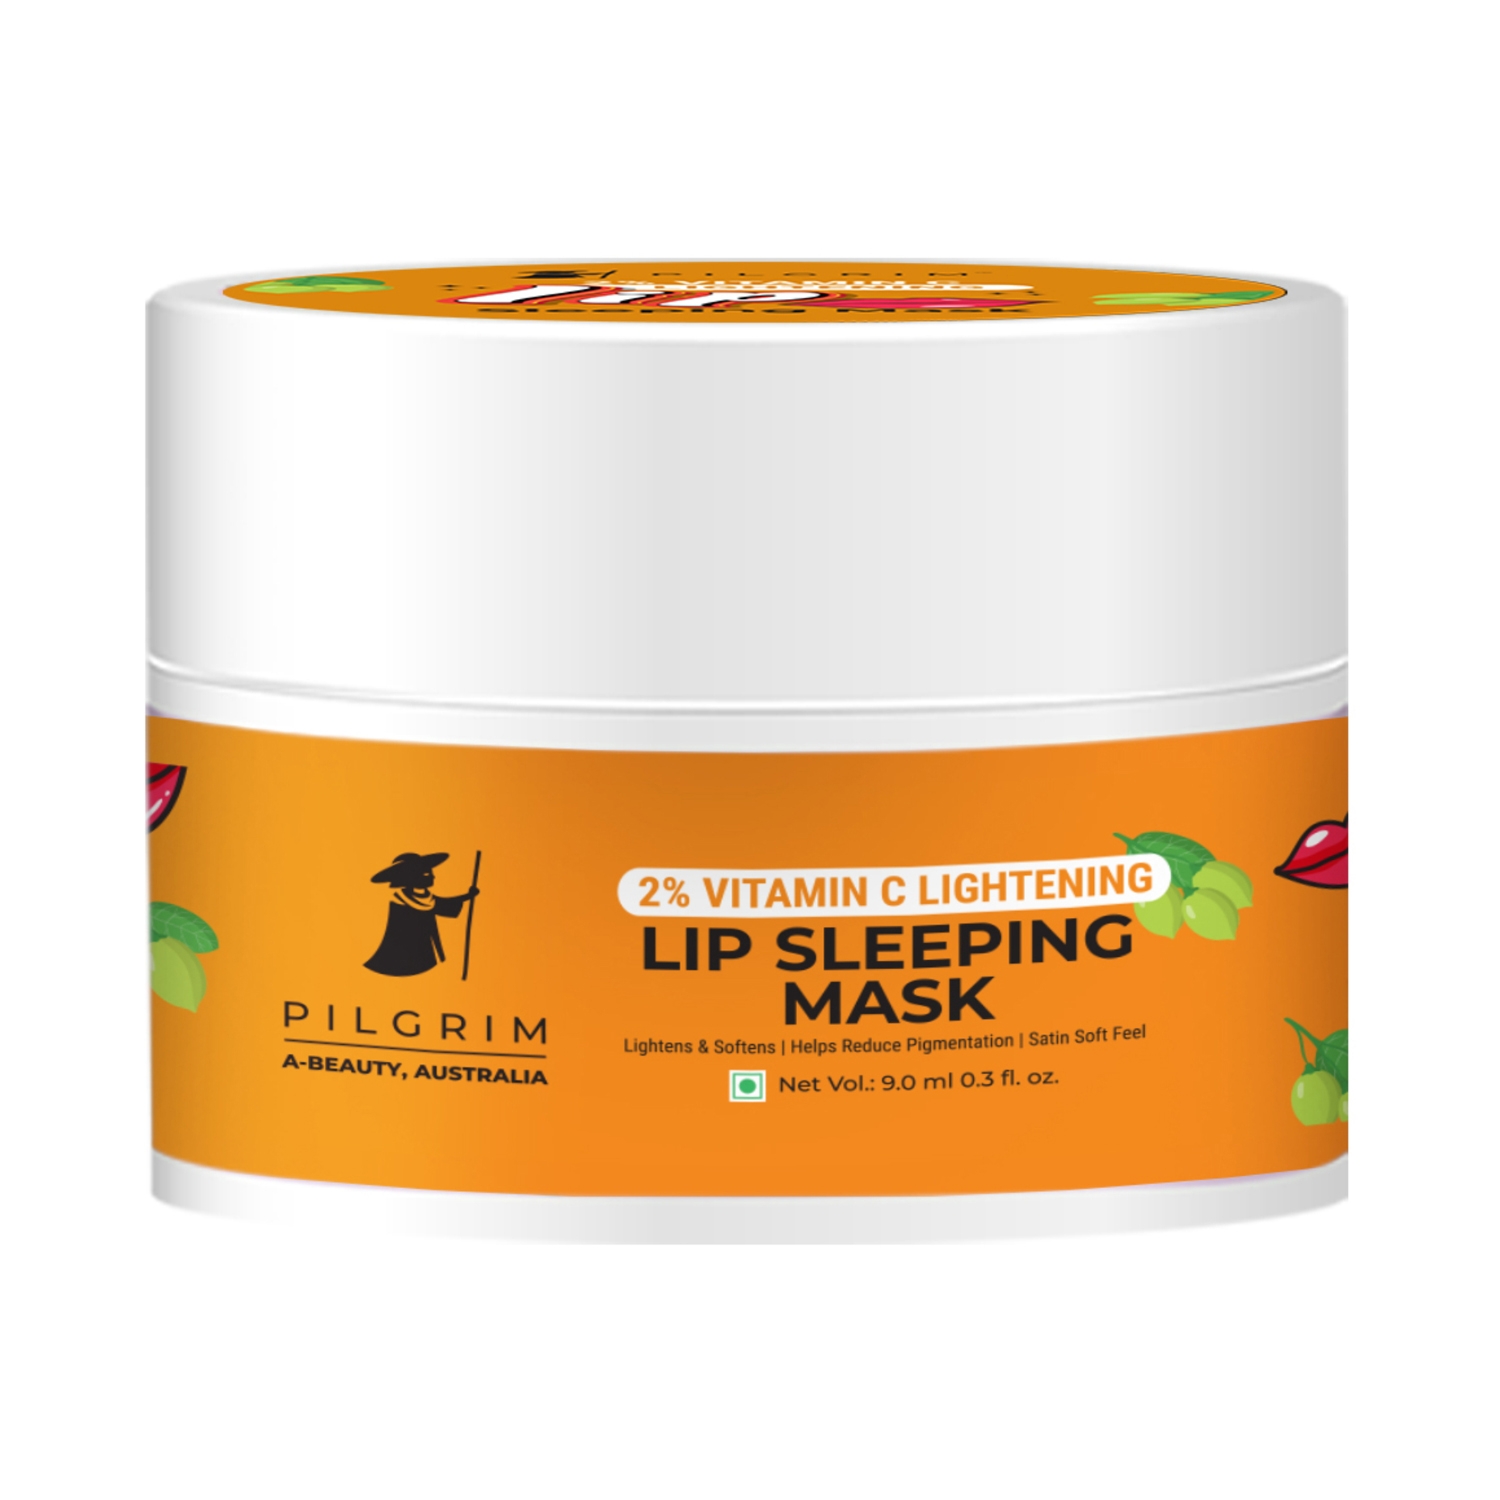 Pilgrim 2% Vitamin C Lightening Lip Sleeping Mask (9ml)